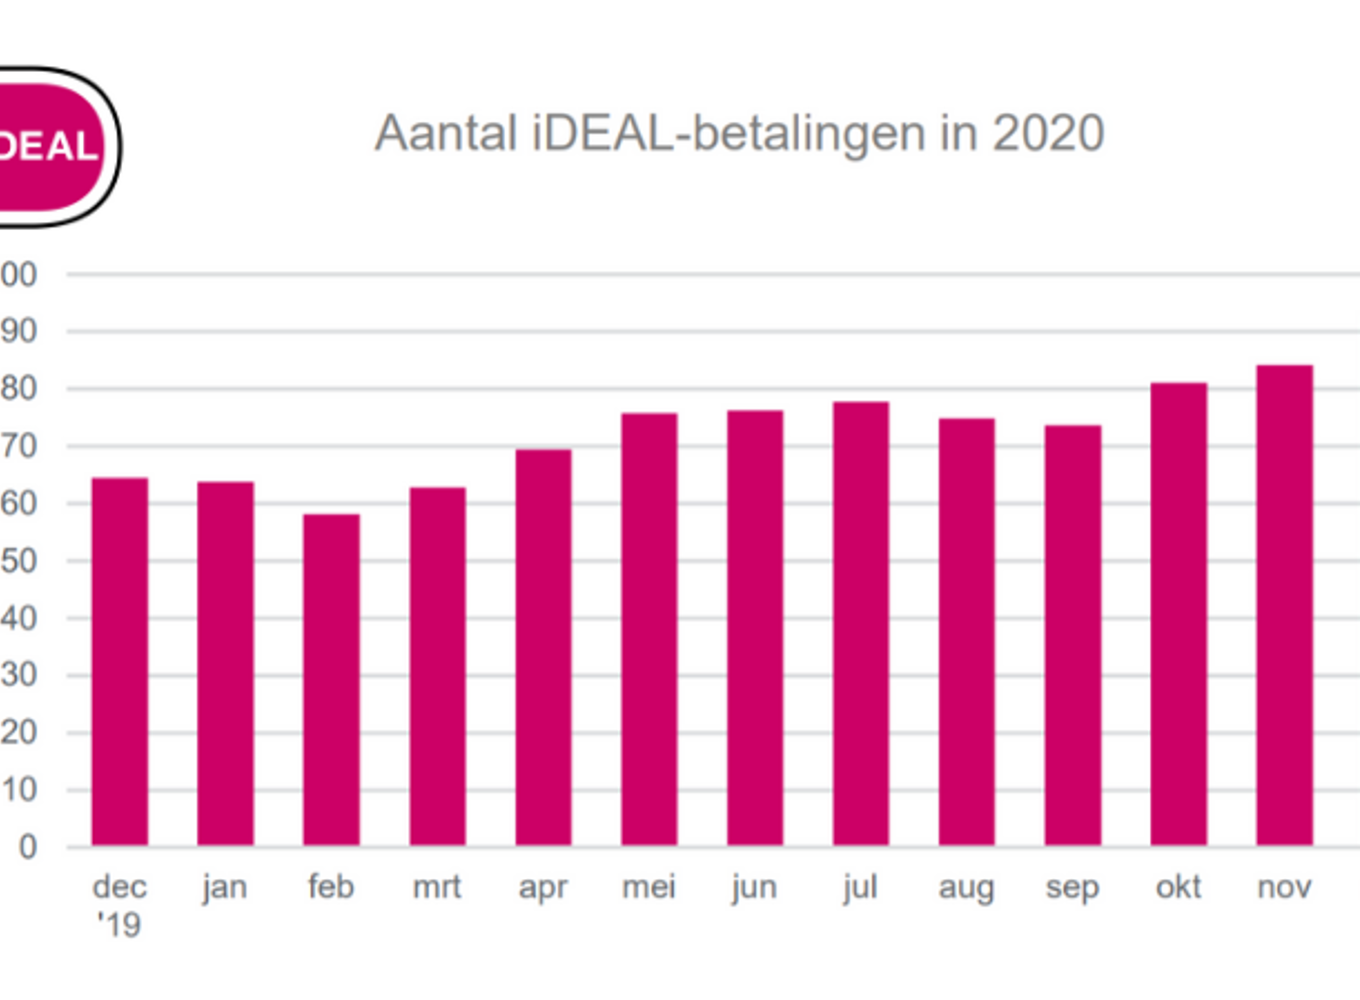 Het aantal iDEAL-betalingen verspreidt over het jaar 2020, met een piek in december.